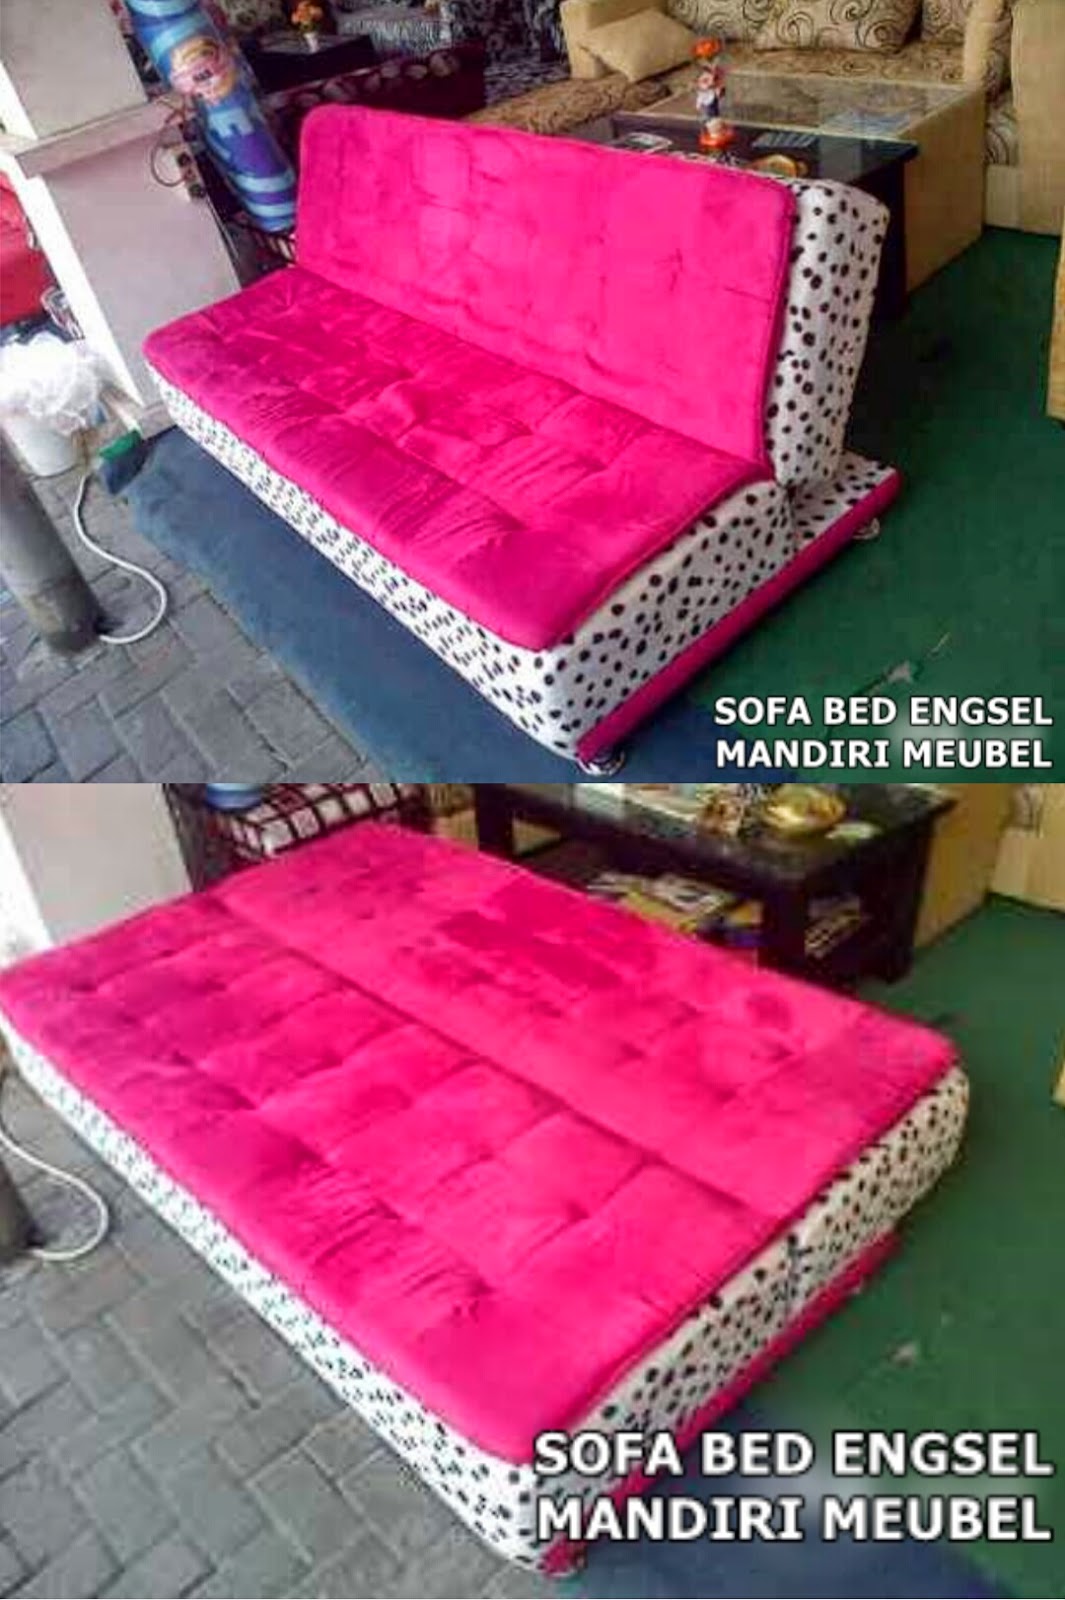  sofa minimalis clasik dan moderen Sofa Minimalis Bed Engsel